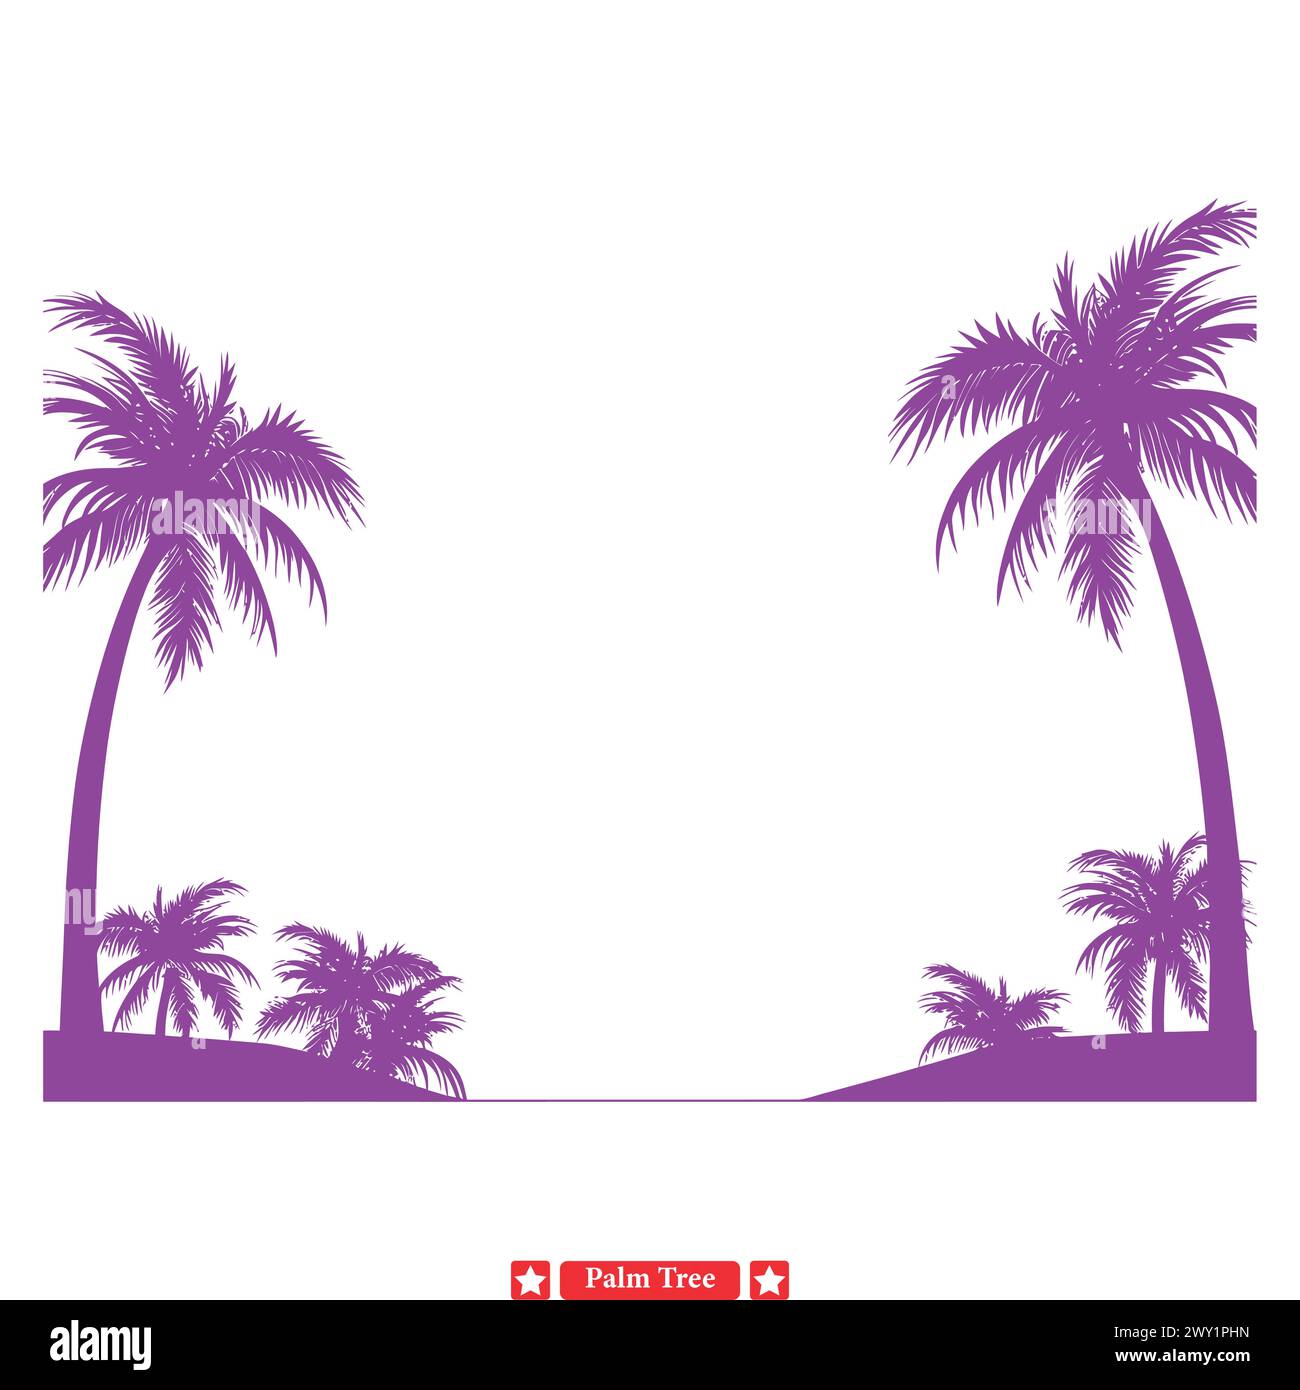 Le palme baciate dal sole irradiano calore e sole con vibranti vettori di palme. Illustrazione Vettoriale